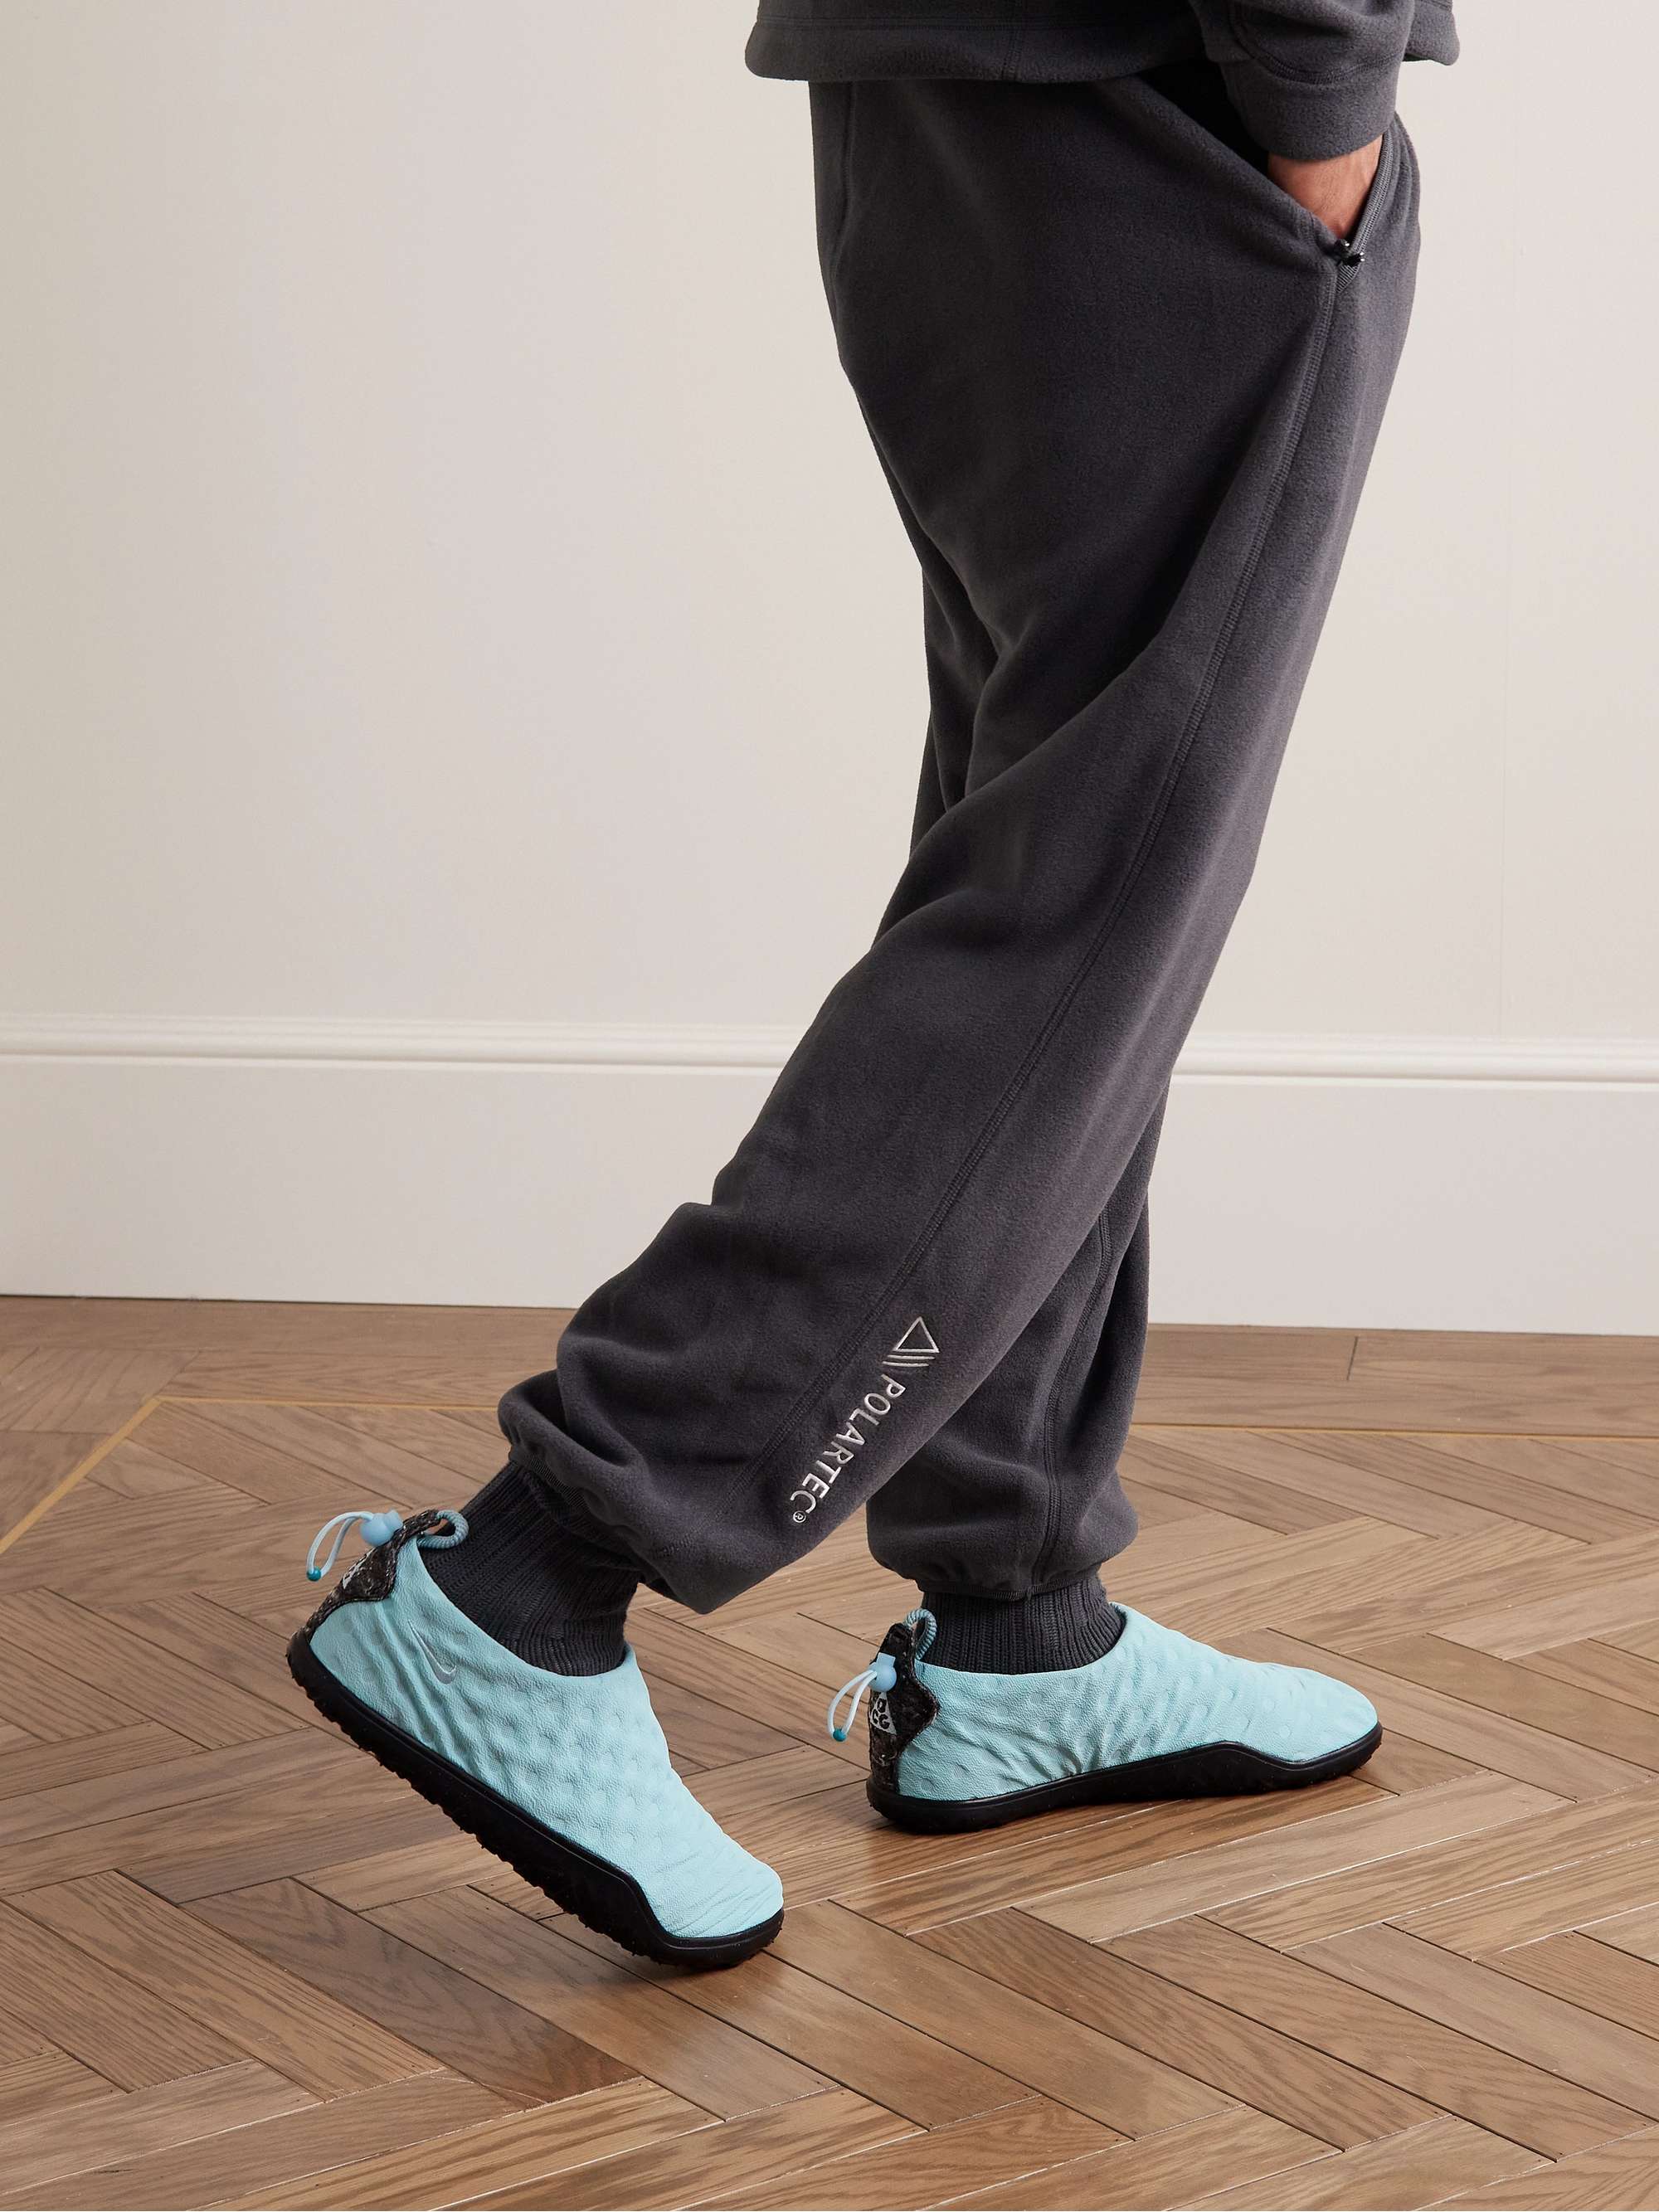 NIKE ACG Moc Wool-Trimmed Neoprene Slip-On Sneakers for Men | MR PORTER